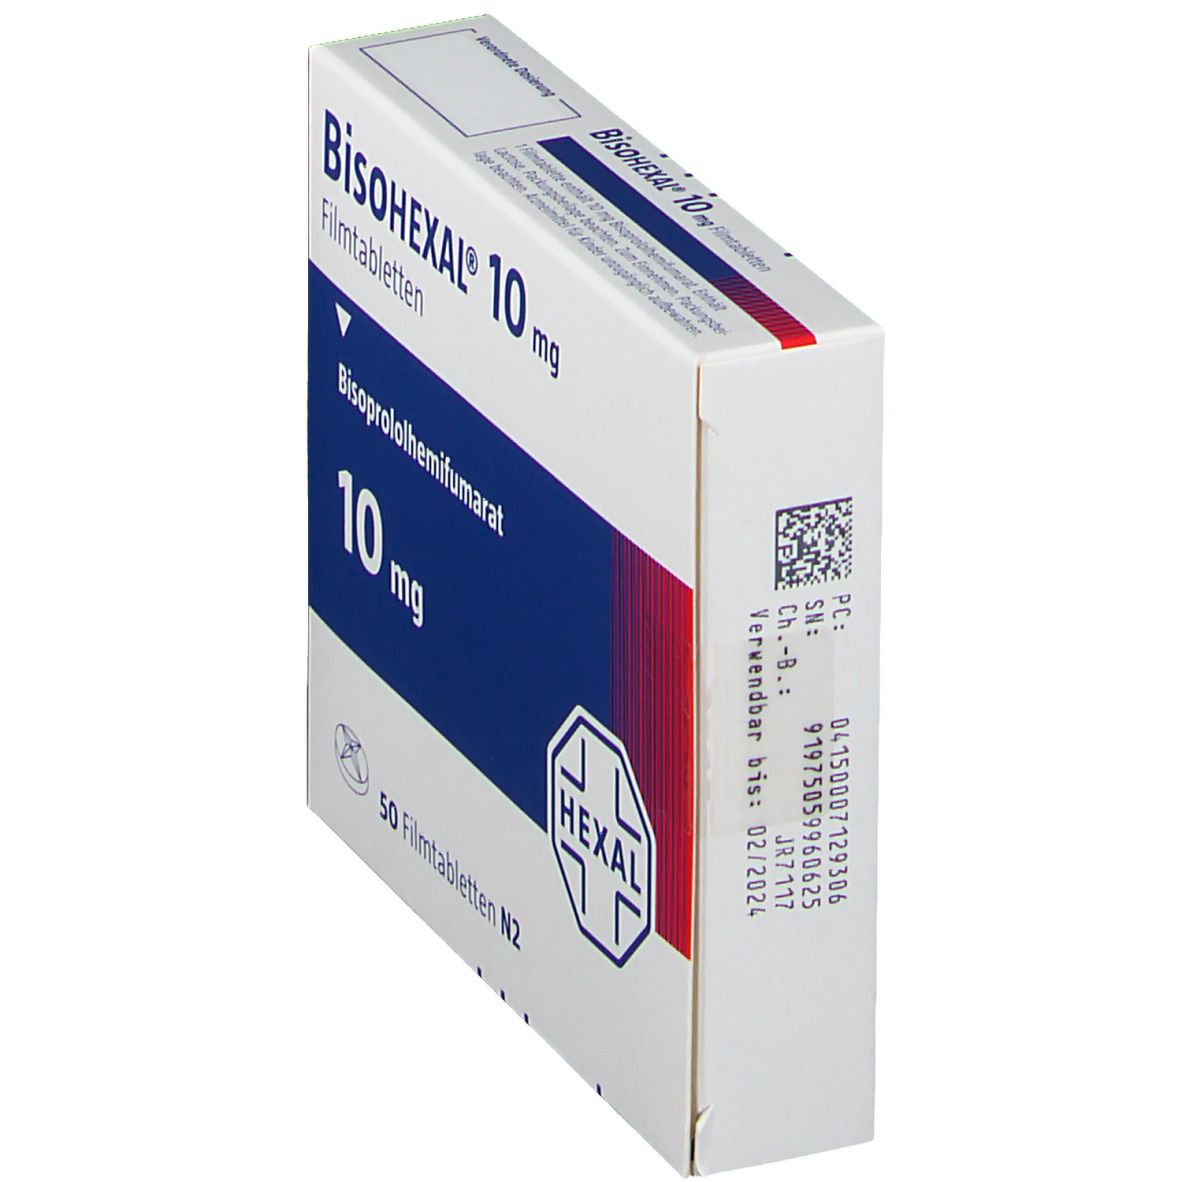 BisoHEXAL®10 mg